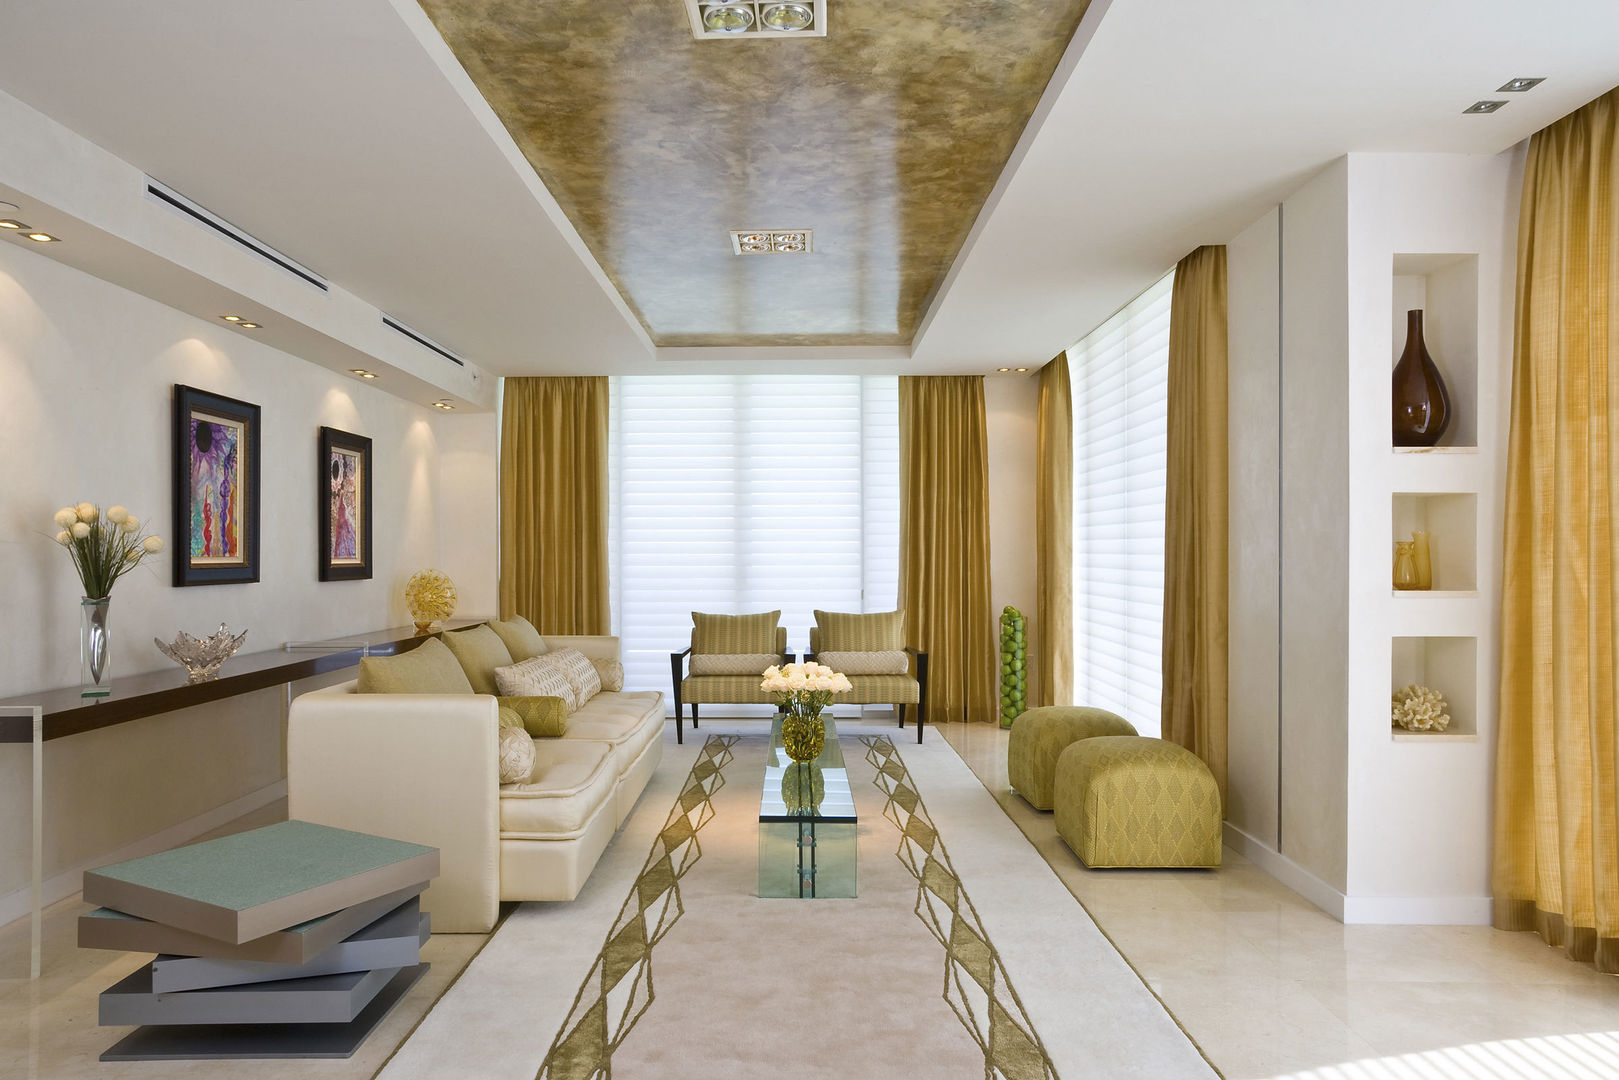 TADİLAT - DEKORASYON - TASARIM VE UYGULAMA, Dekorasyon Şirketi Dekorasyon Şirketi Living room